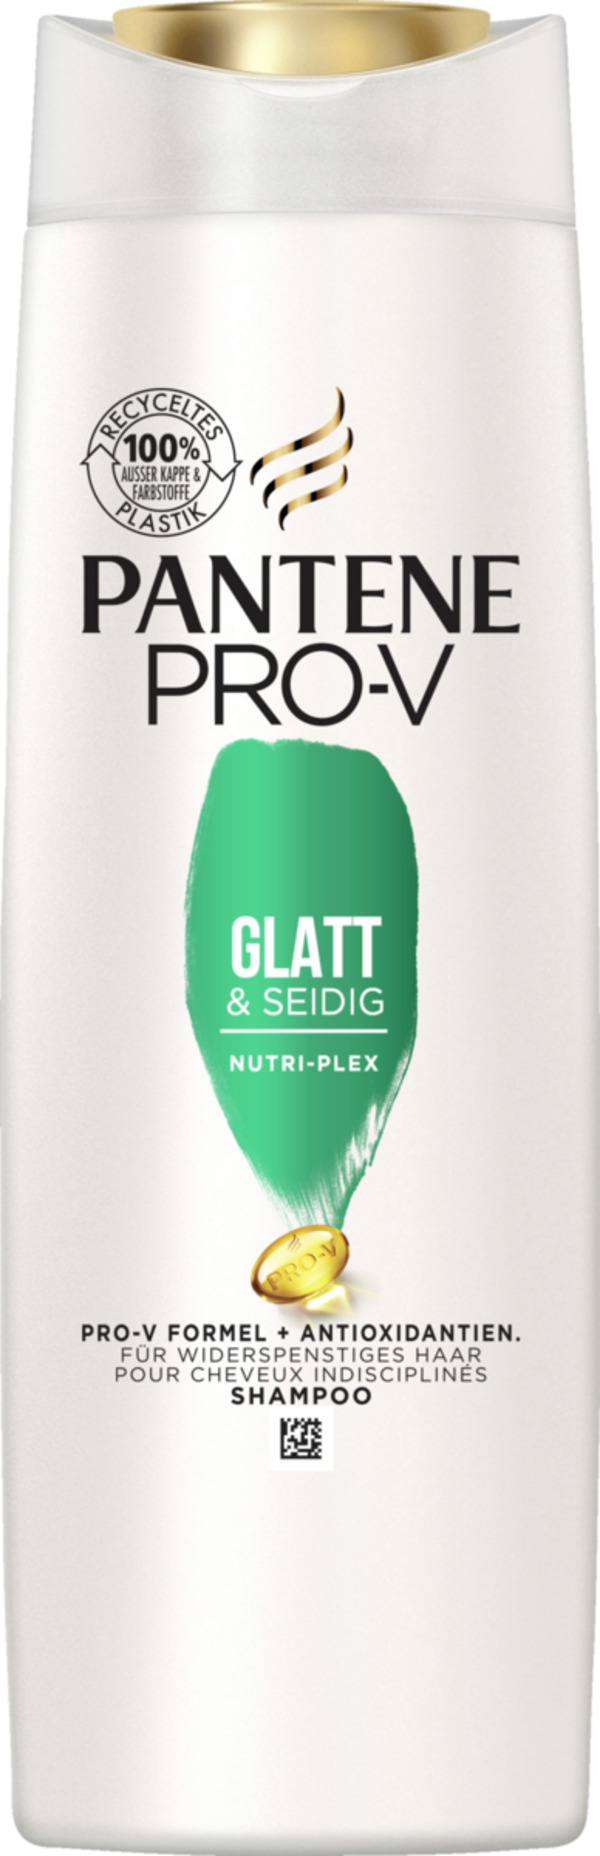 Bild 1 von Pantene Pro-V Glatt & Seidig Shampoo 6.17 EUR/1 l